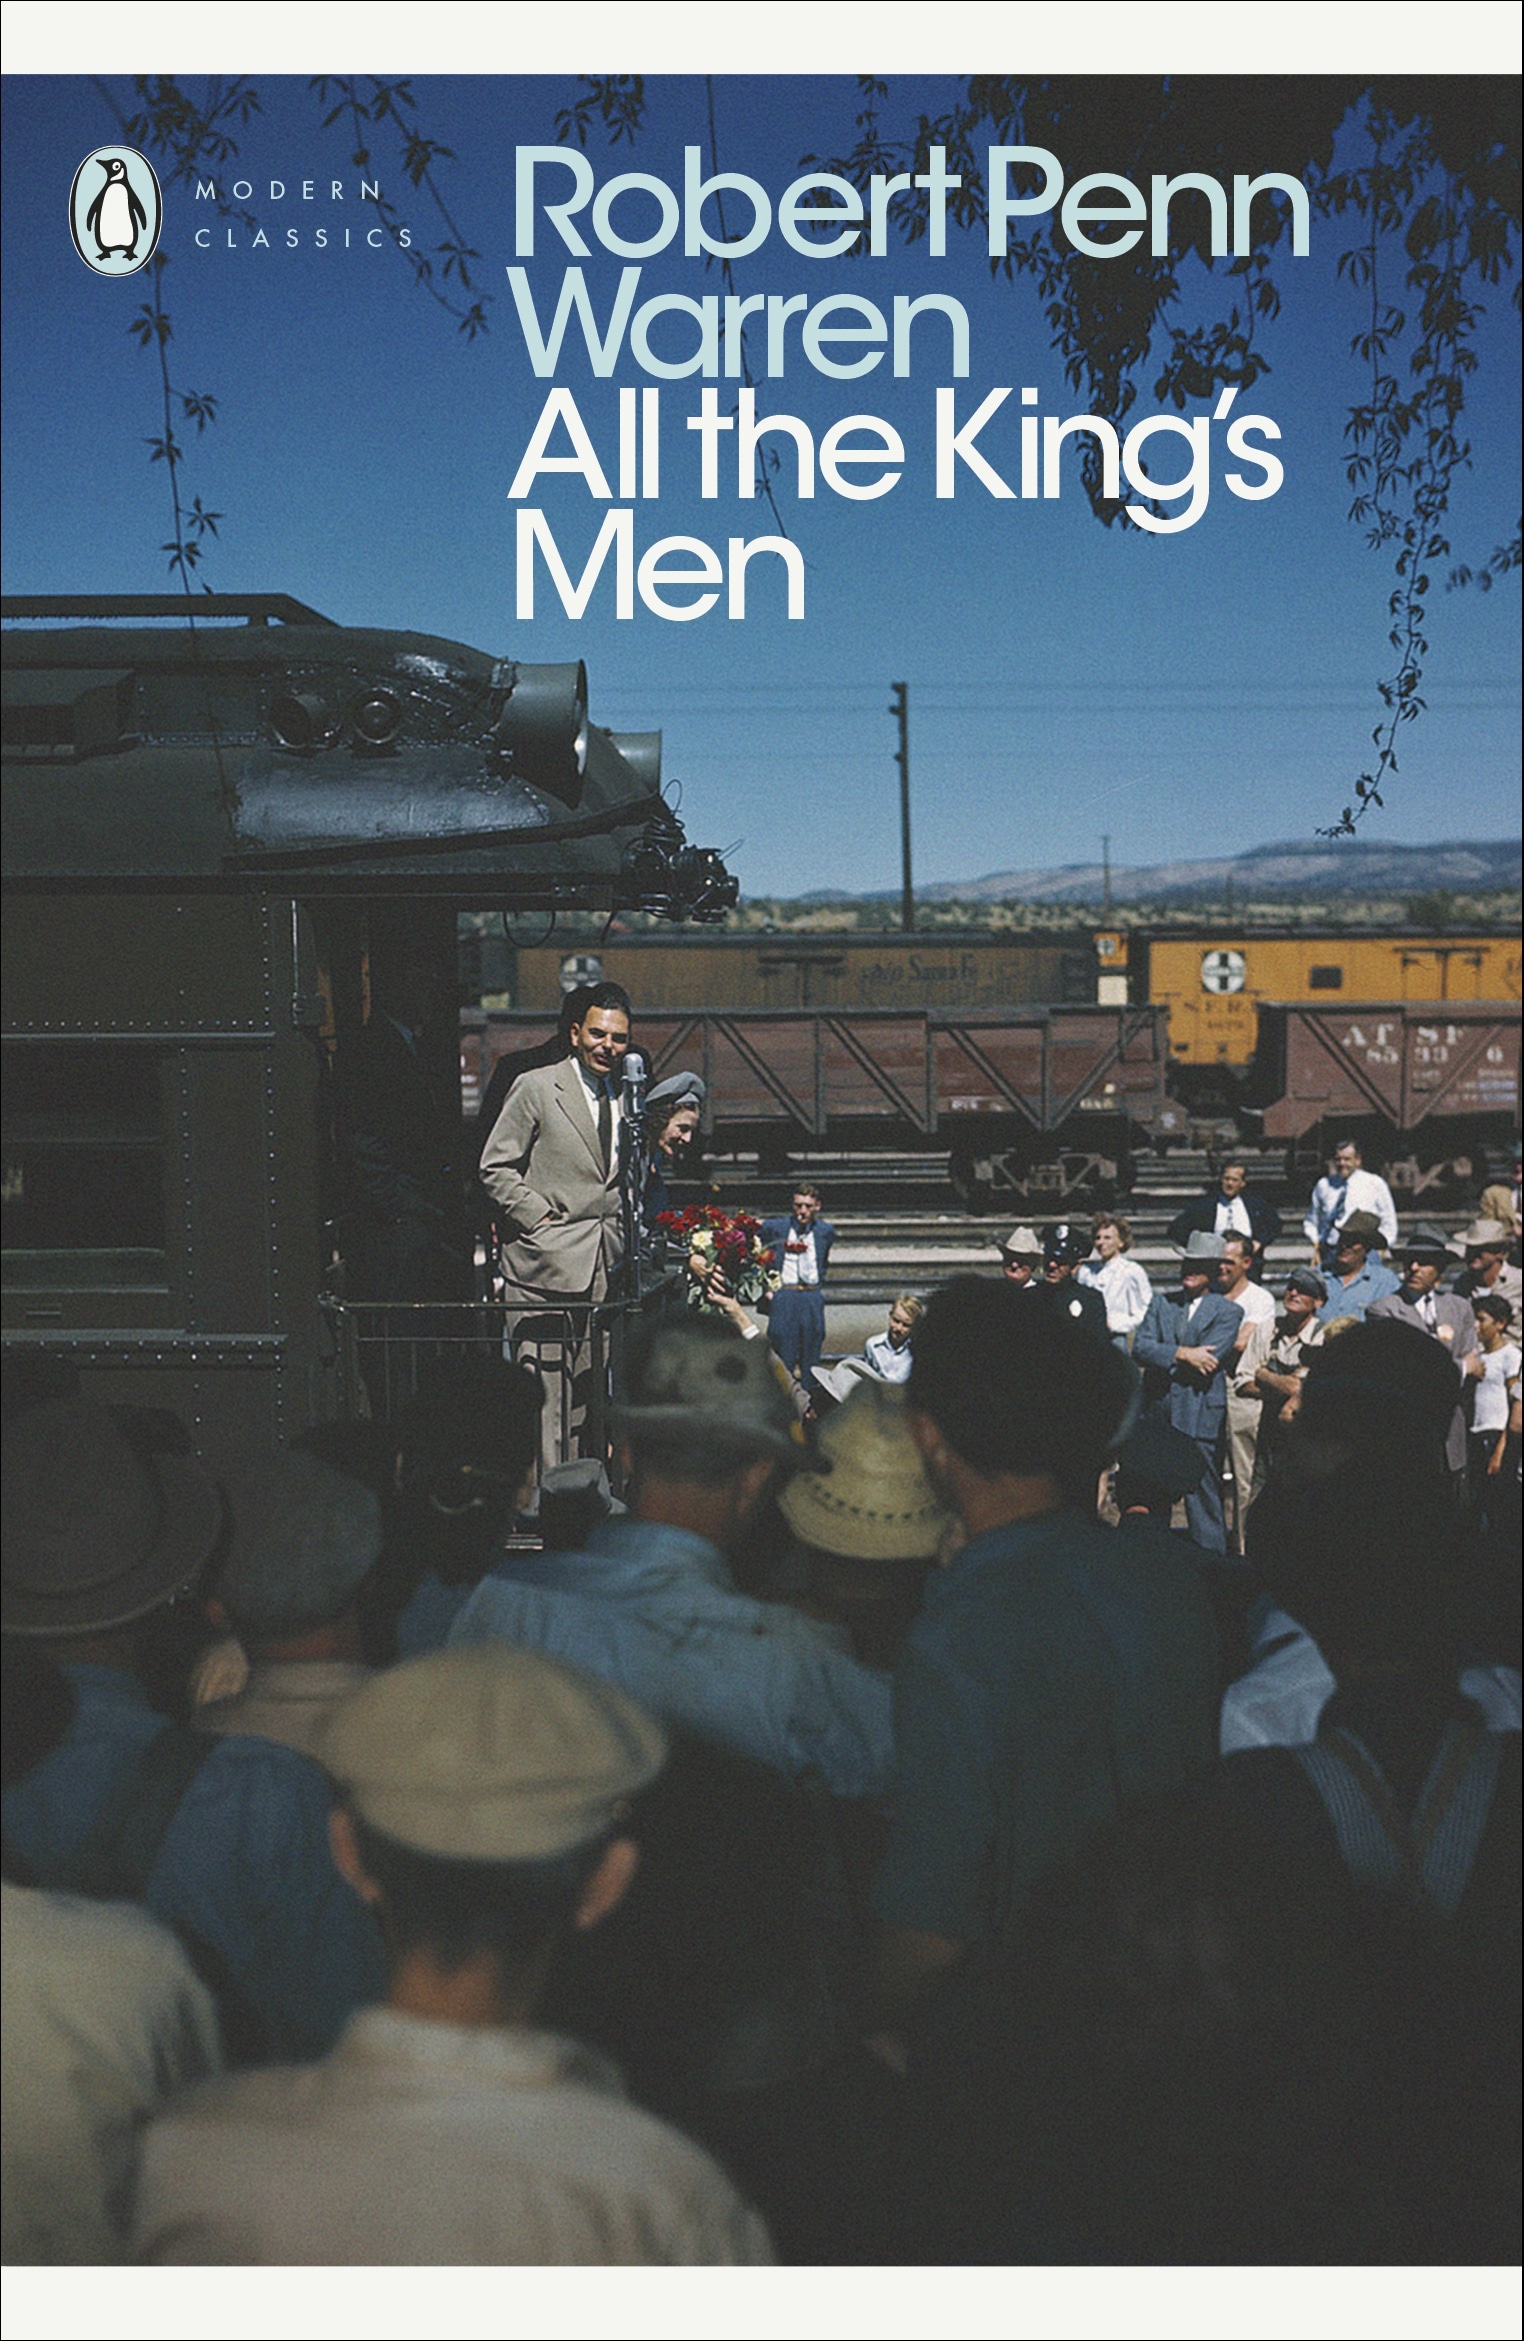 Book “All the King's Men” by Robert Penn Warren — August 30, 2007